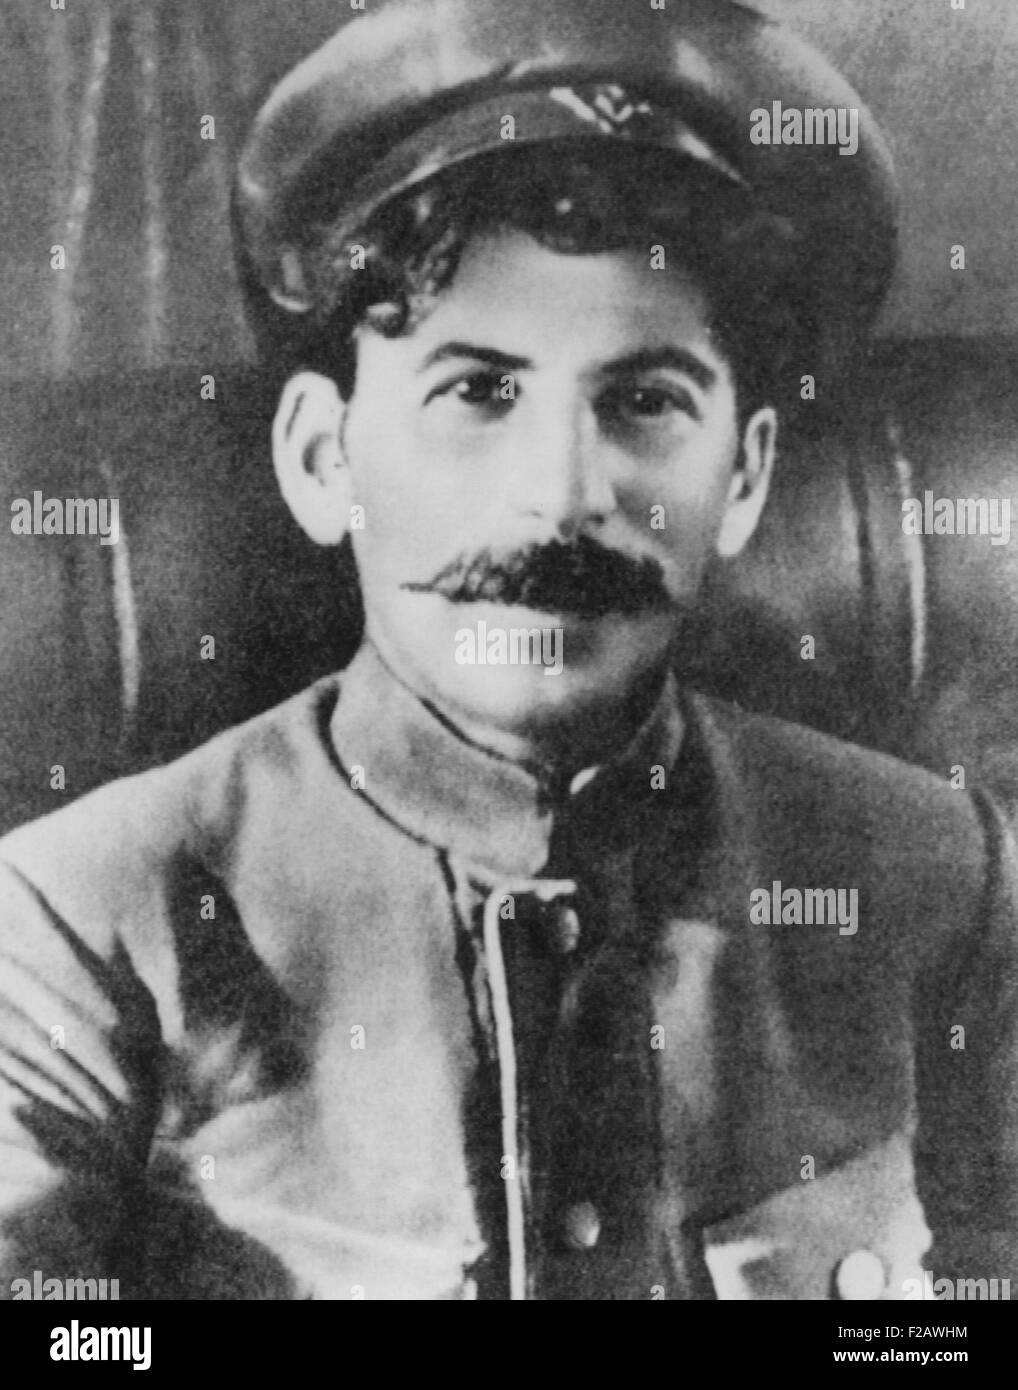 Josef Staline comme un révolutionnaire soviétique pendant la Seconde Guerre mondiale 1. Ca. 1915. CSU (2015   1370 11) Banque D'Images